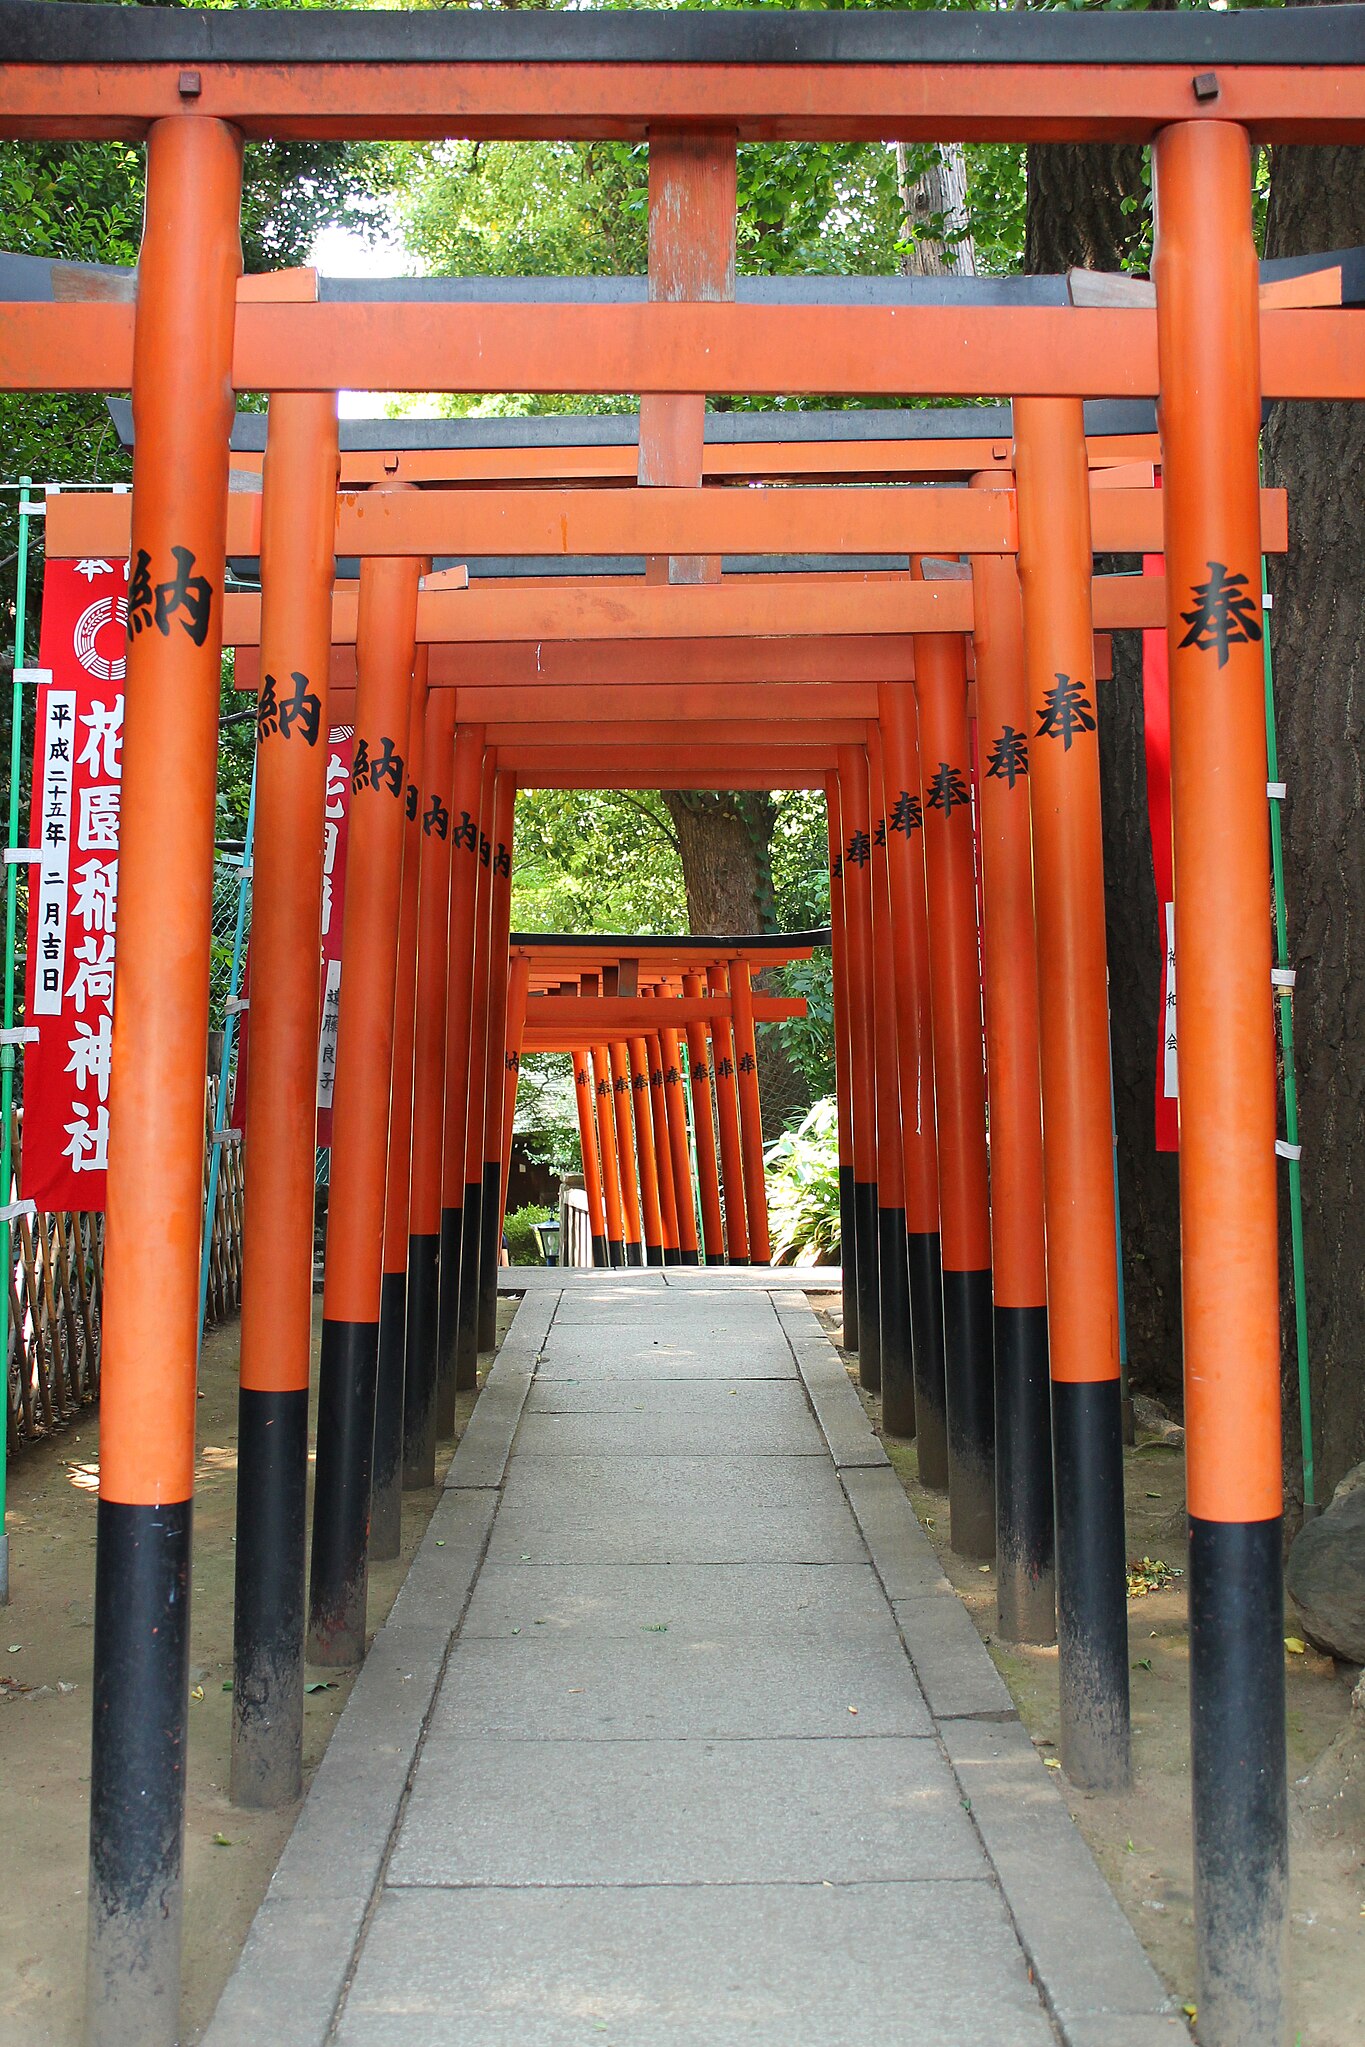 File:Torii at Hanazono Inari Jinja in Ueno Park, Tokyo, Japan 